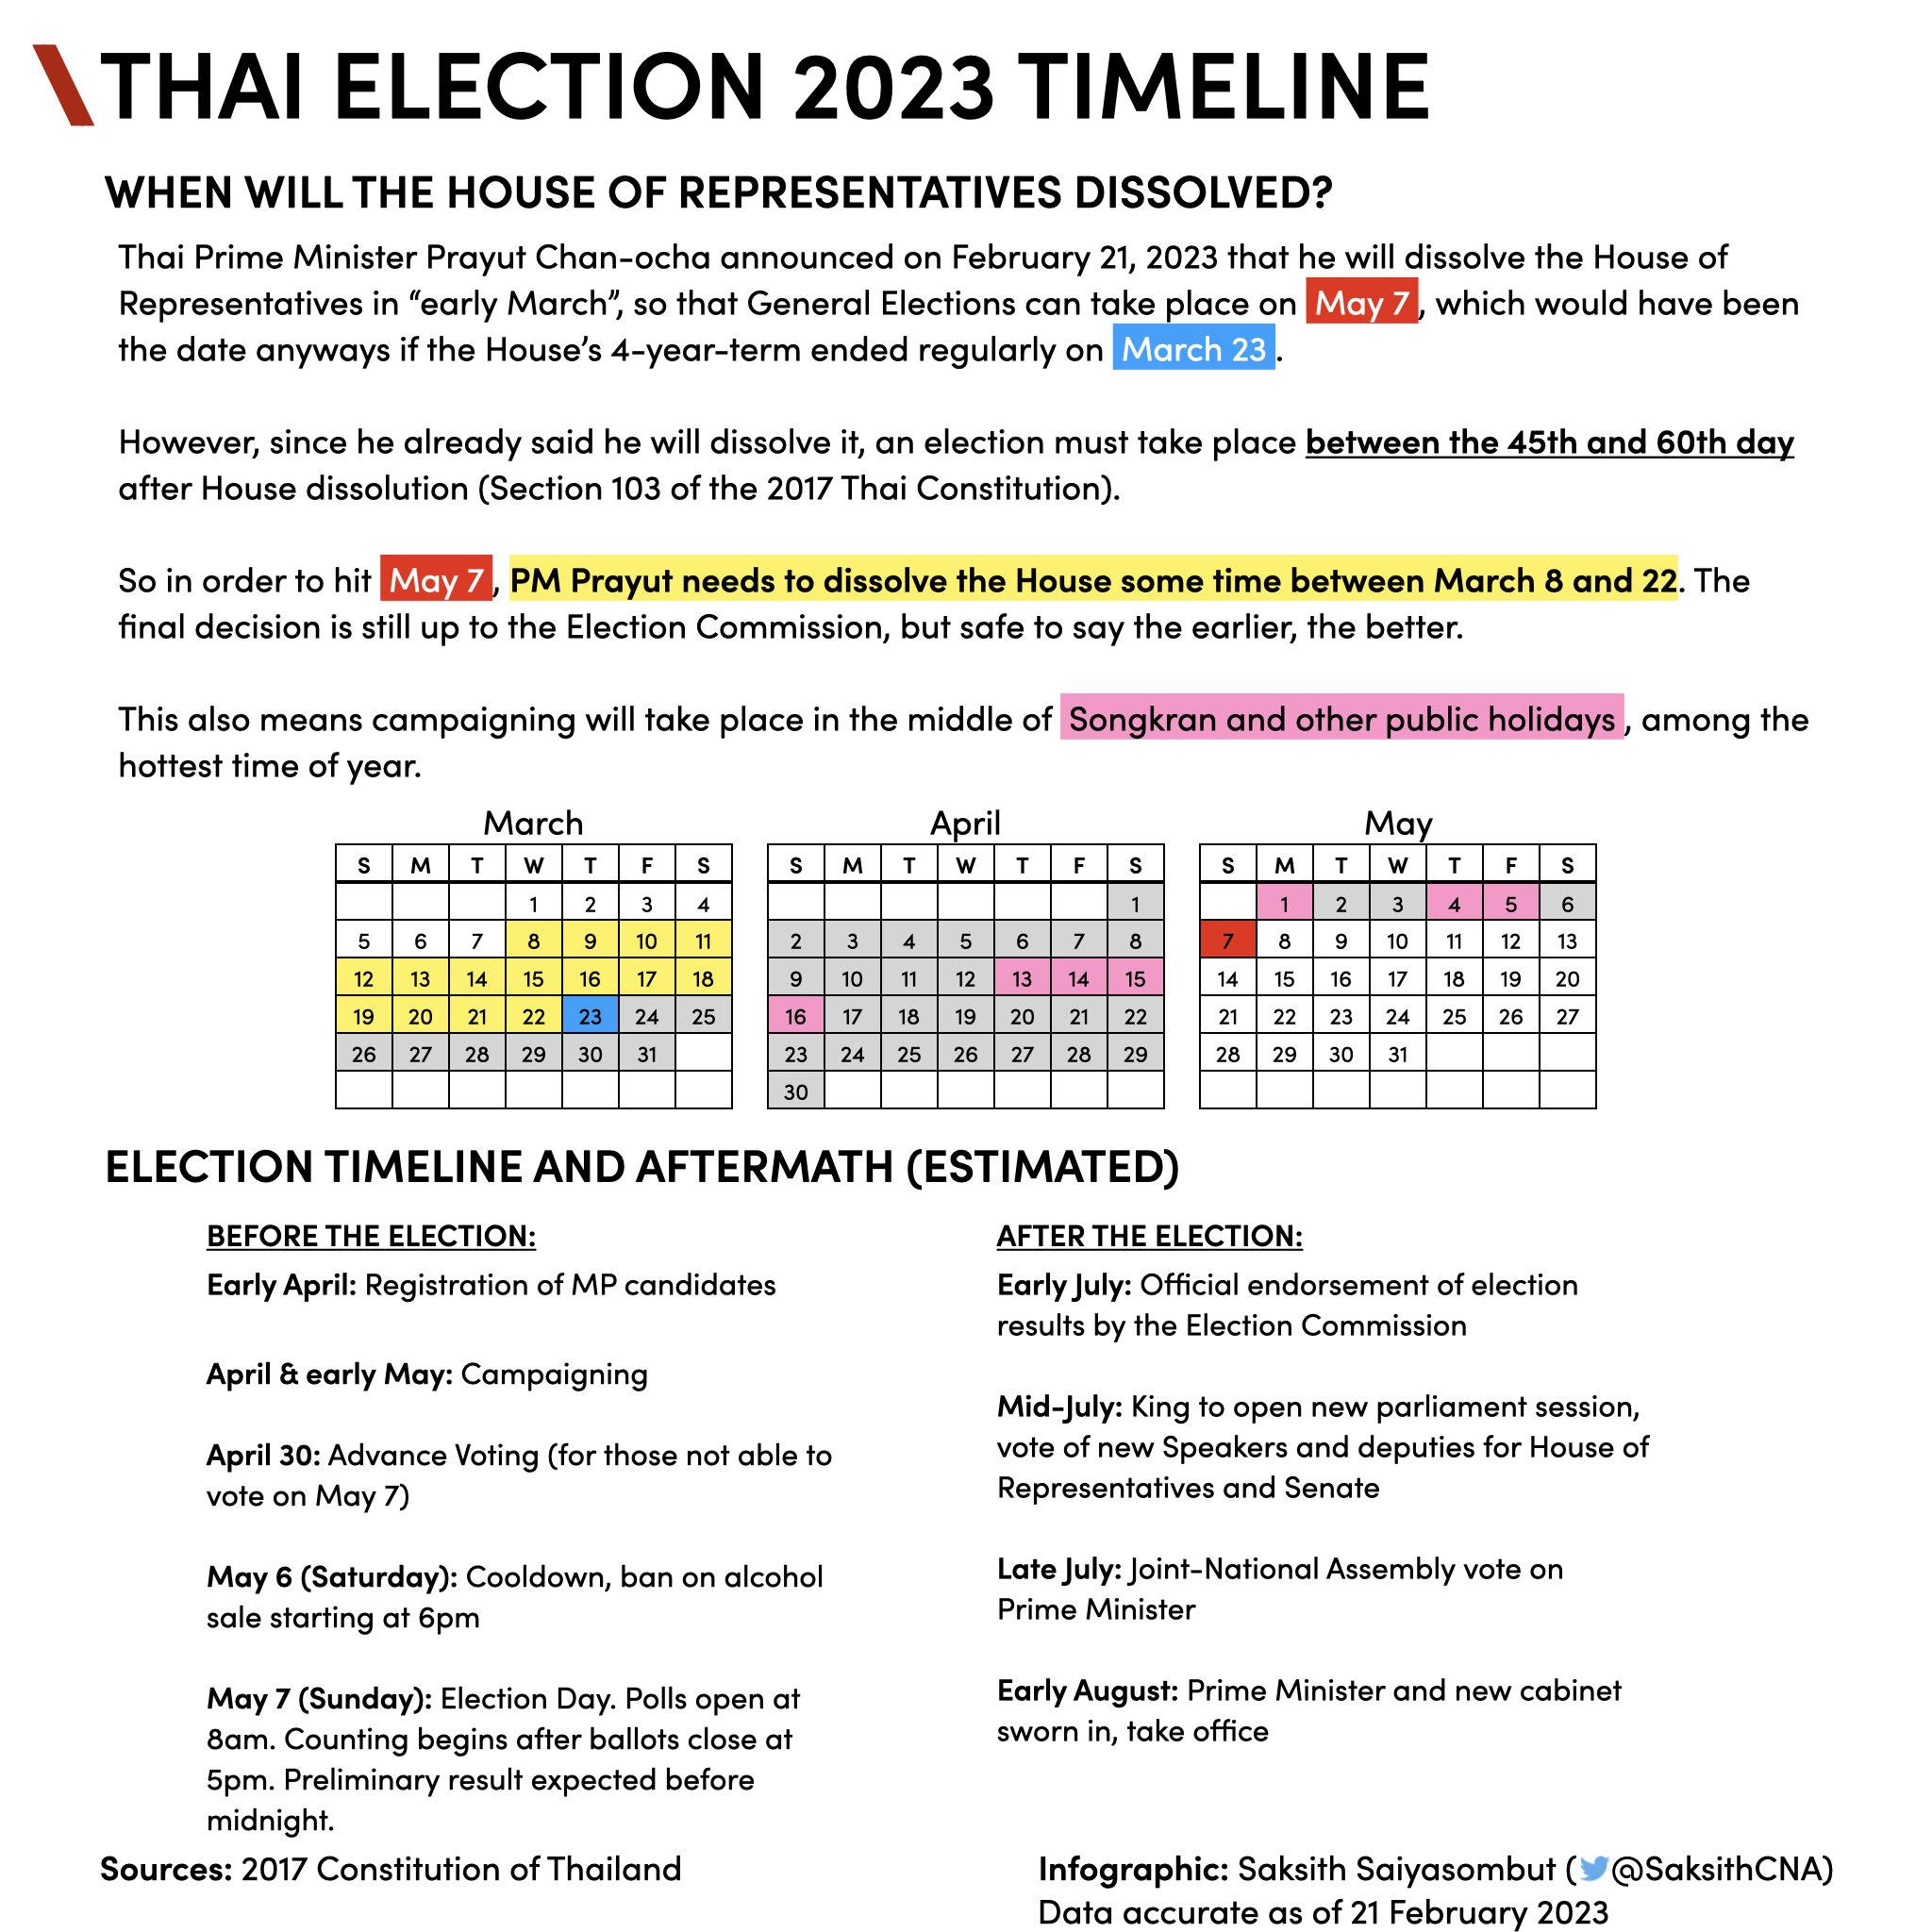 Election Timeline